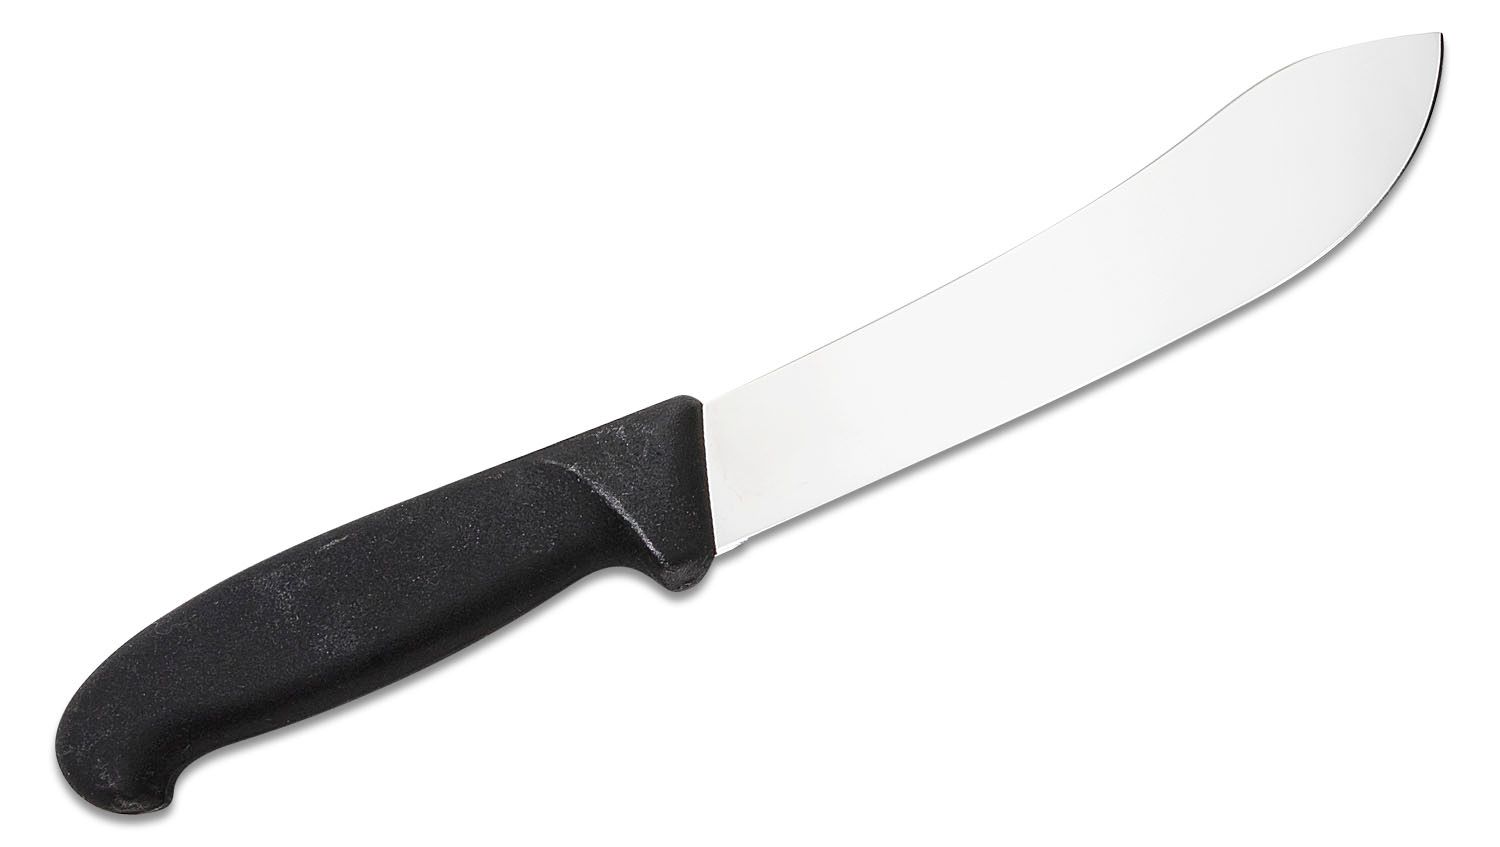 Victorinox Fibrox butcher knife